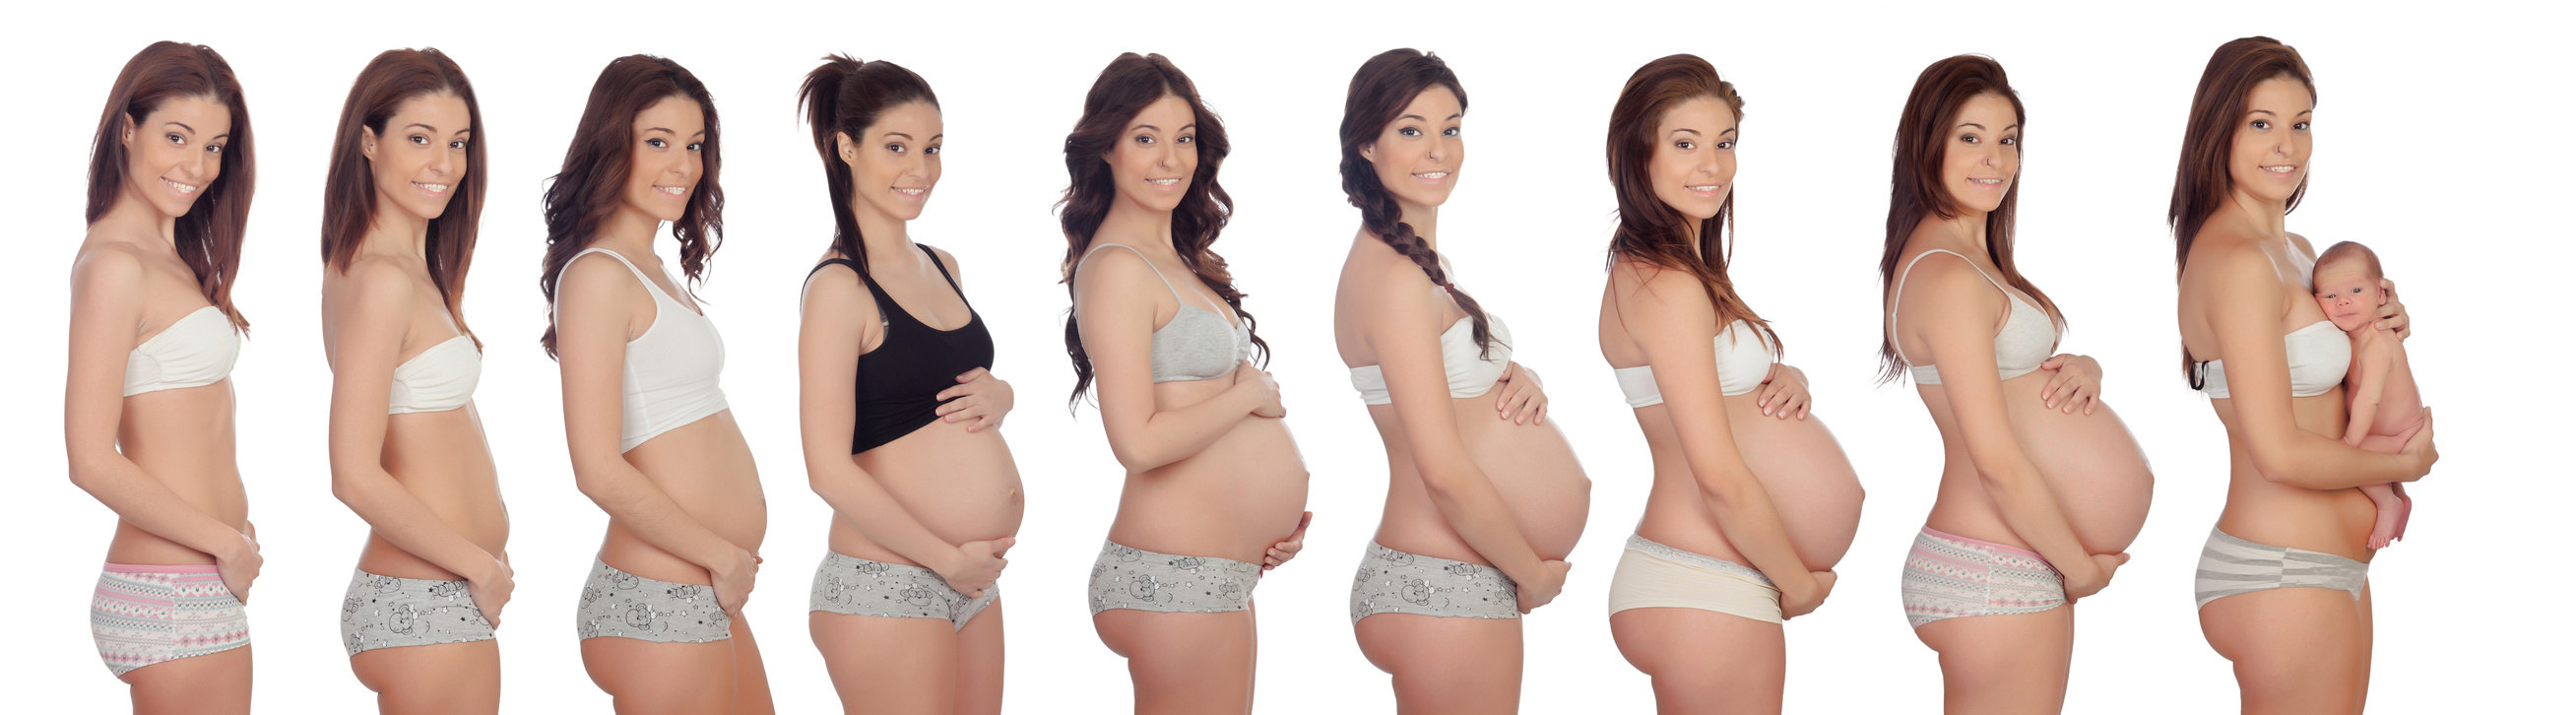 изменения в груди на ранних сроках беременности фото фото 61